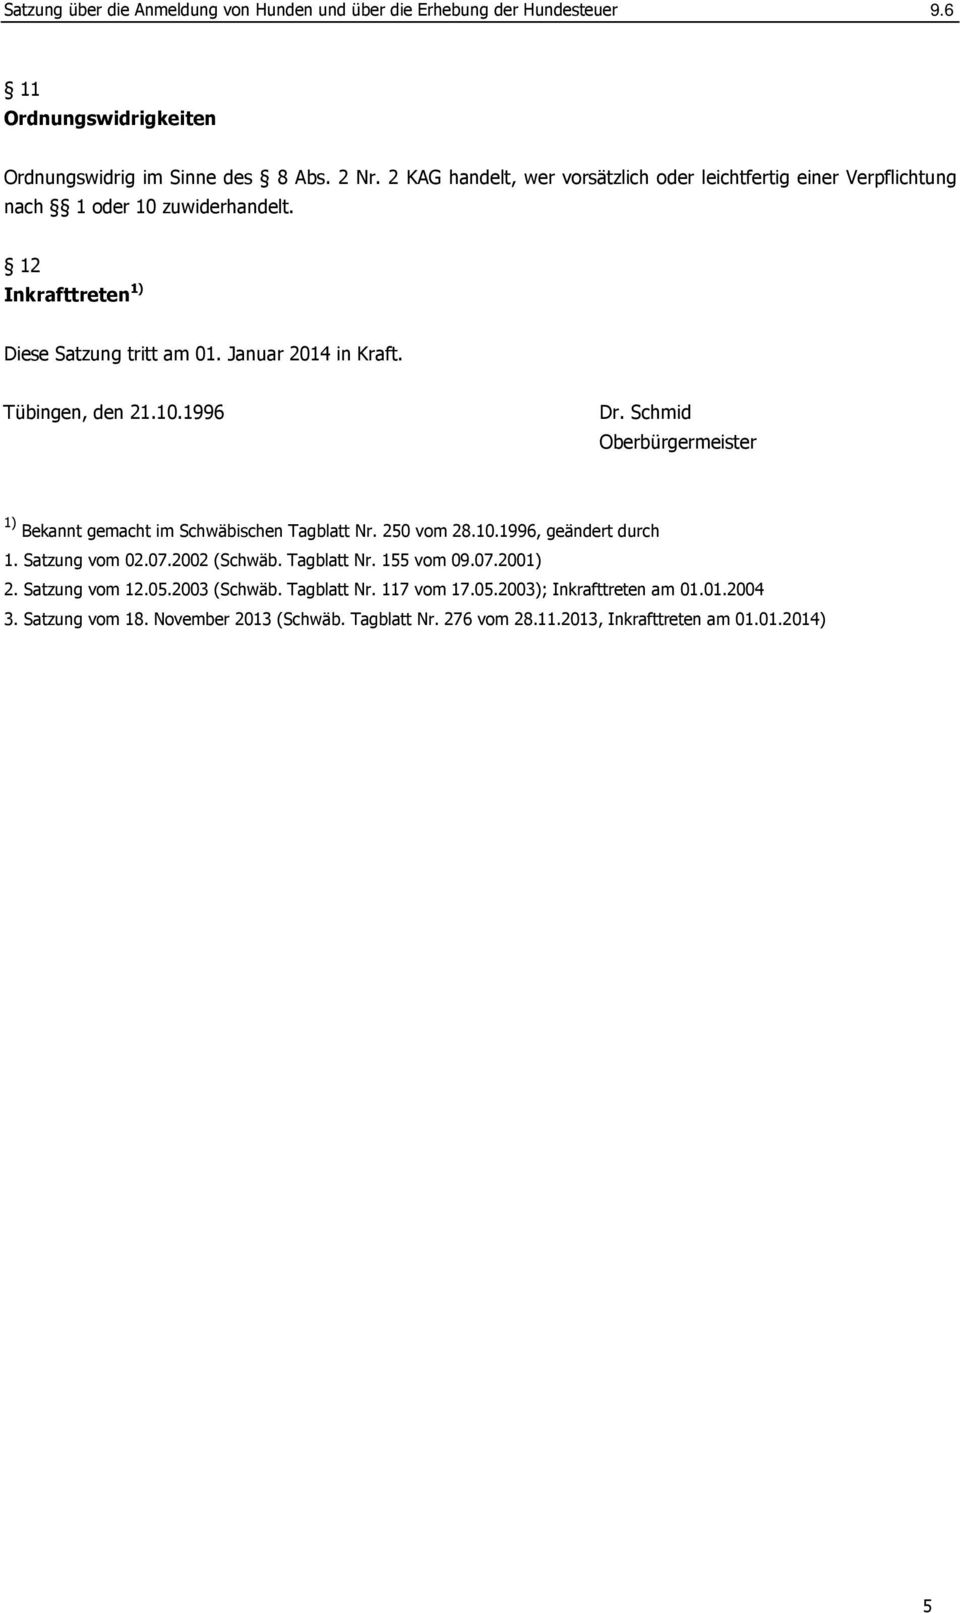 Tübingen, den 21.10.1996 Dr. Schmid Oberbürgermeister 1) Bekannt gemacht im Schwäbischen Tagblatt Nr. 250 vom 28.10.1996, geändert durch 1. Satzung vom 02.07.2002 (Schwäb.